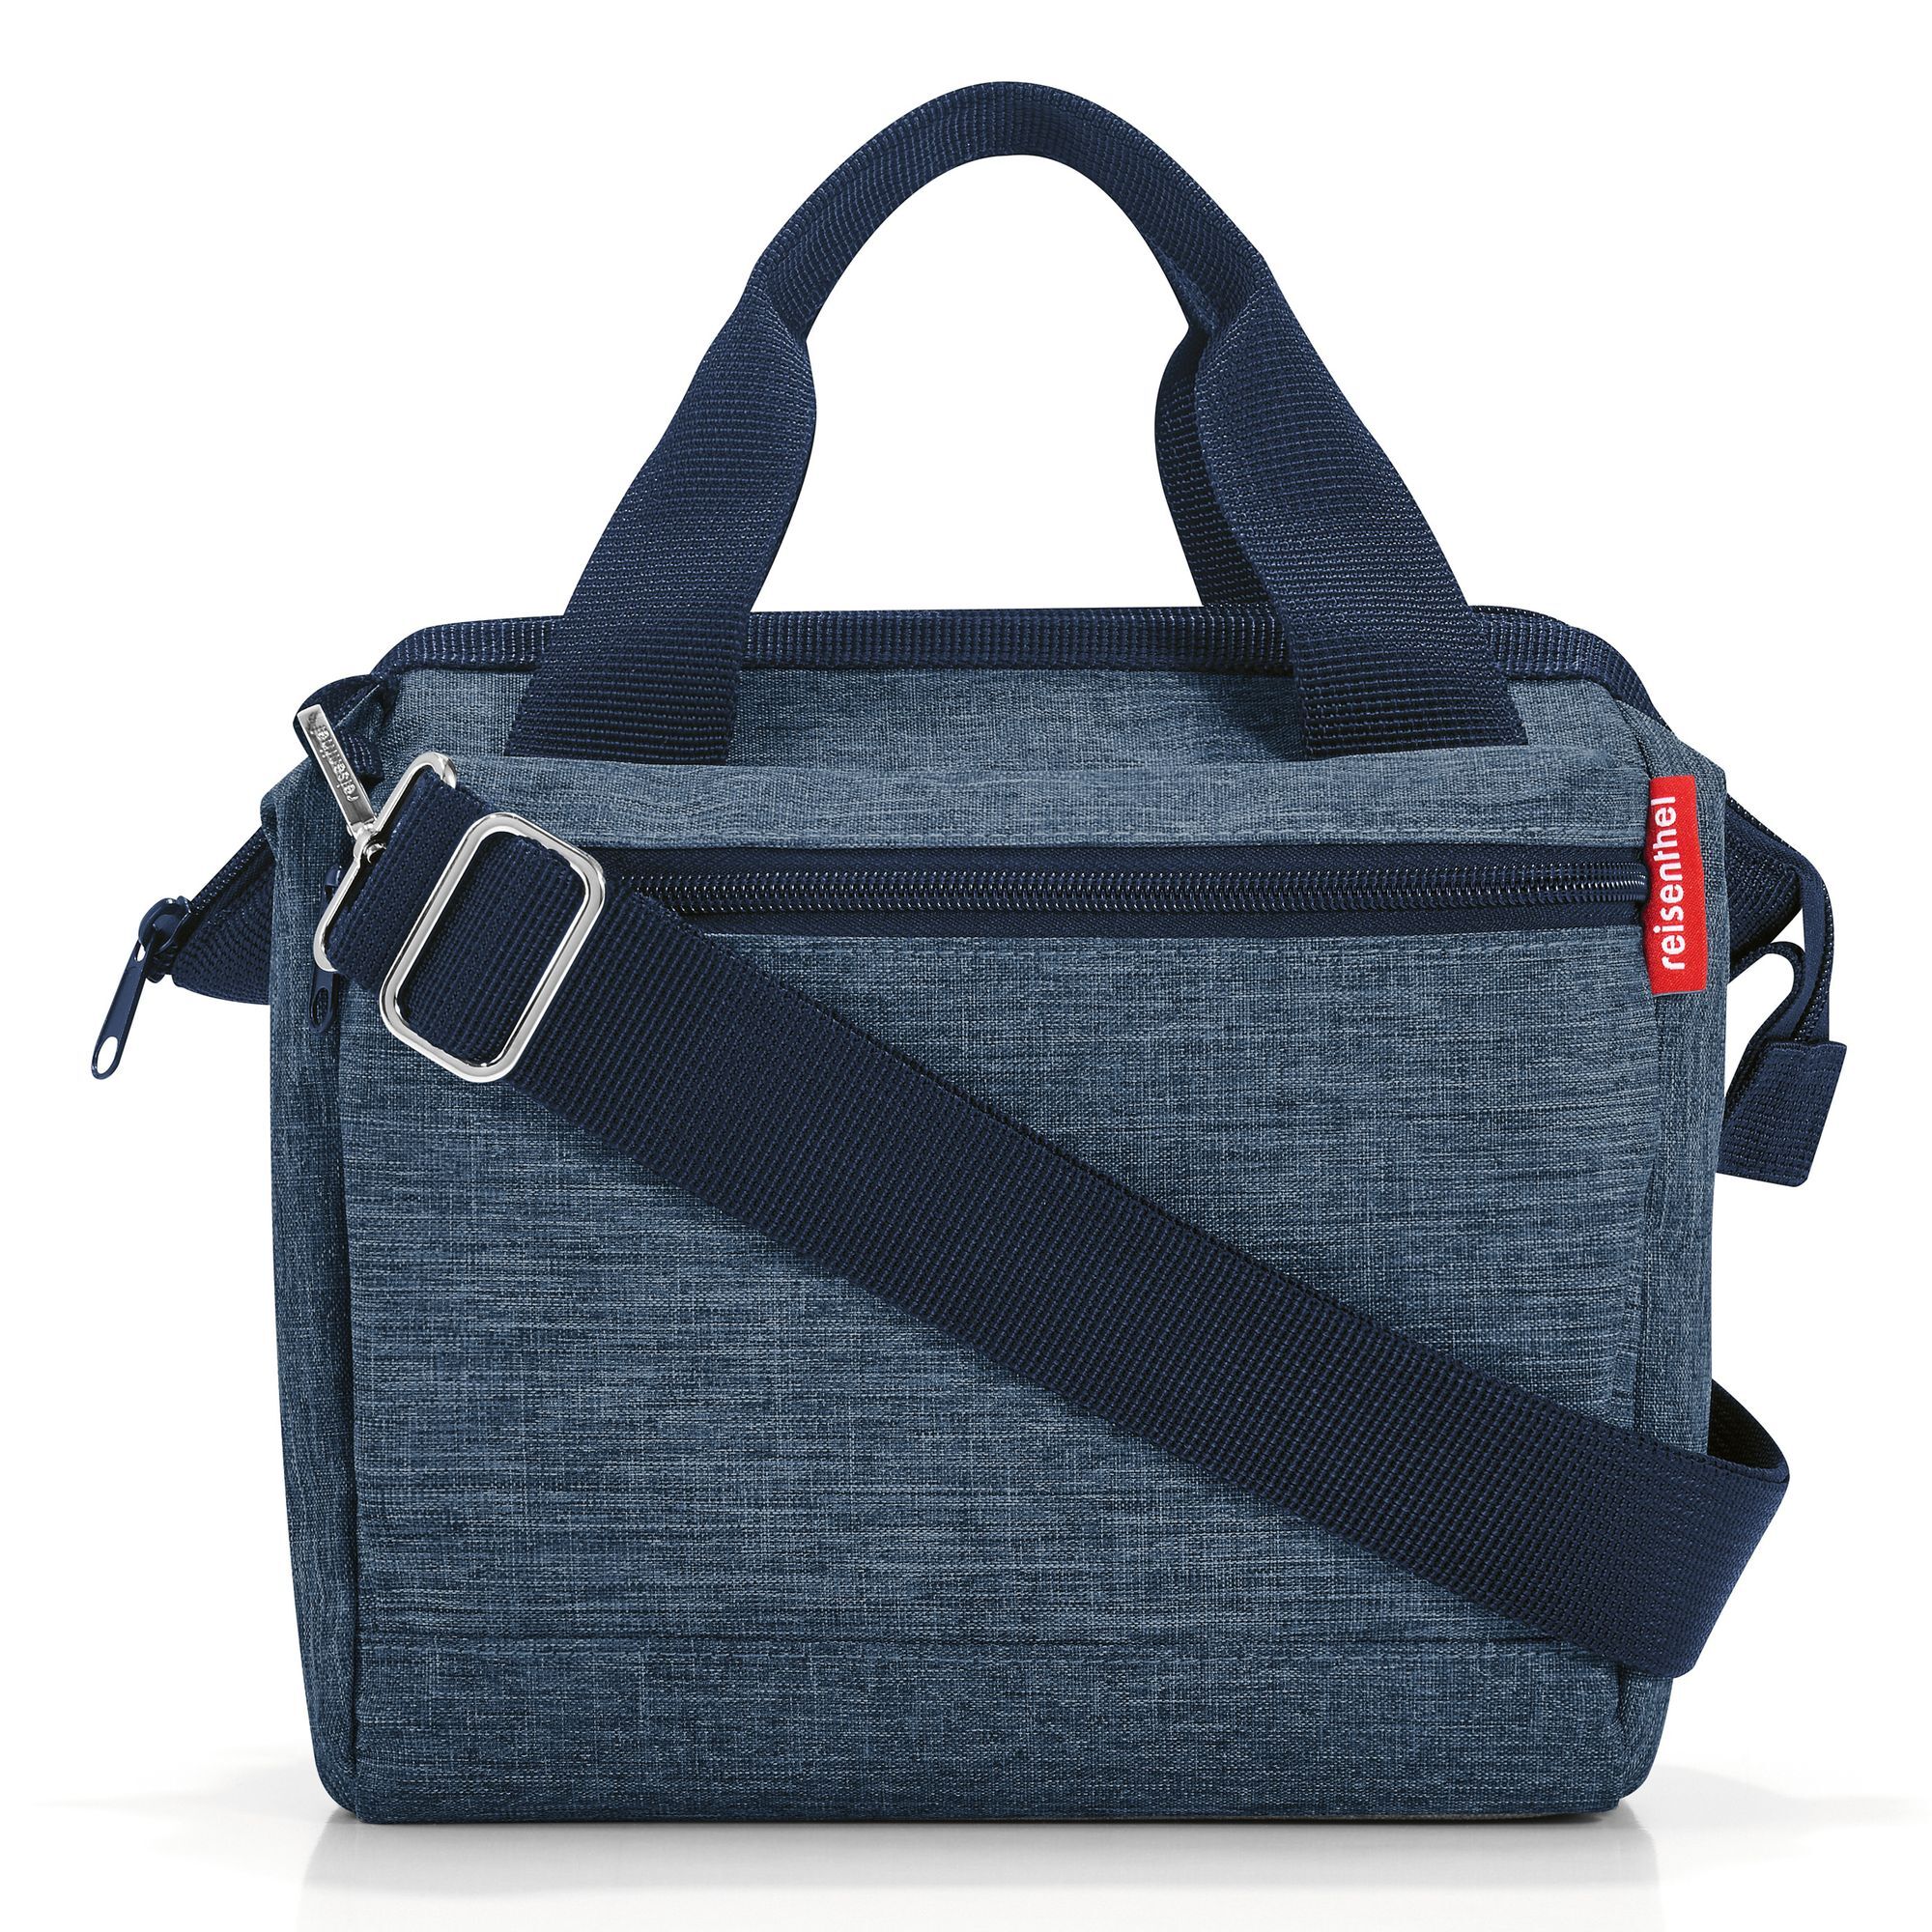 Сумка Reisenthel Allrounder Handtasche 22 cm, цвет twist blue сумки для мамы reisenthel сумка allrounder m zebra